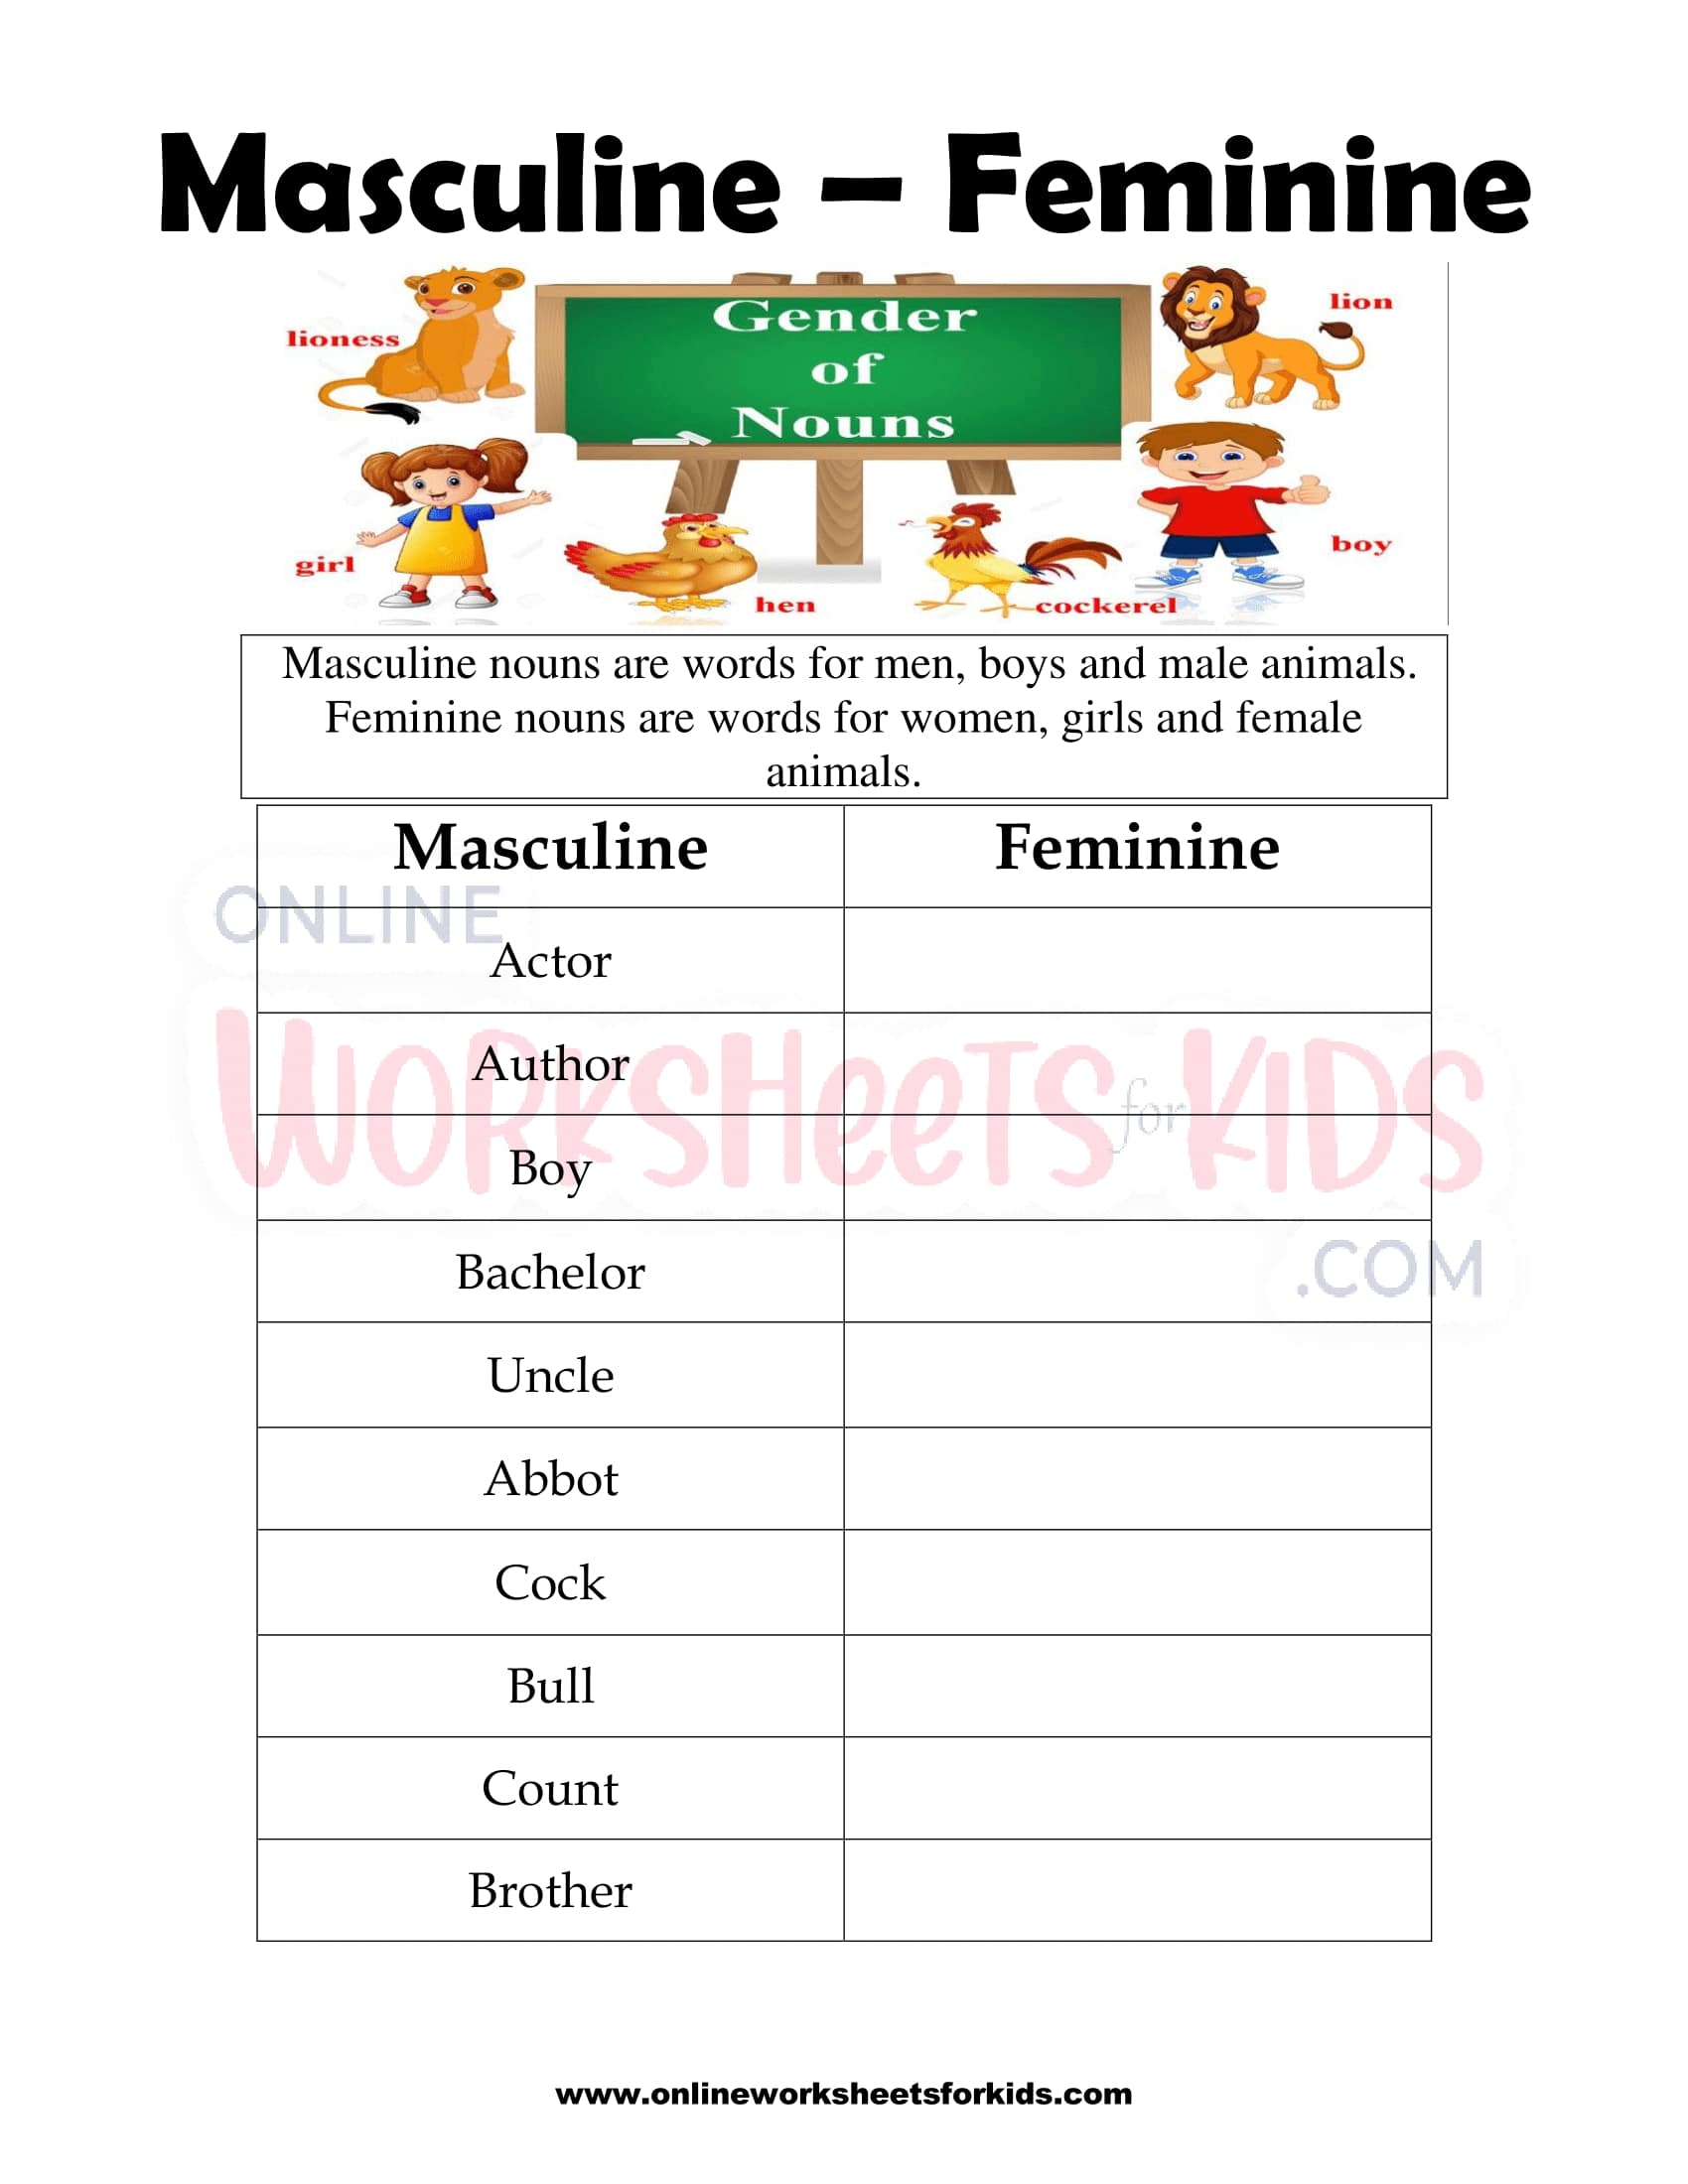 nouns-gender-worksheet-nouns-activities-nouns-nouns-worksheet-gender-worksheets-and-online